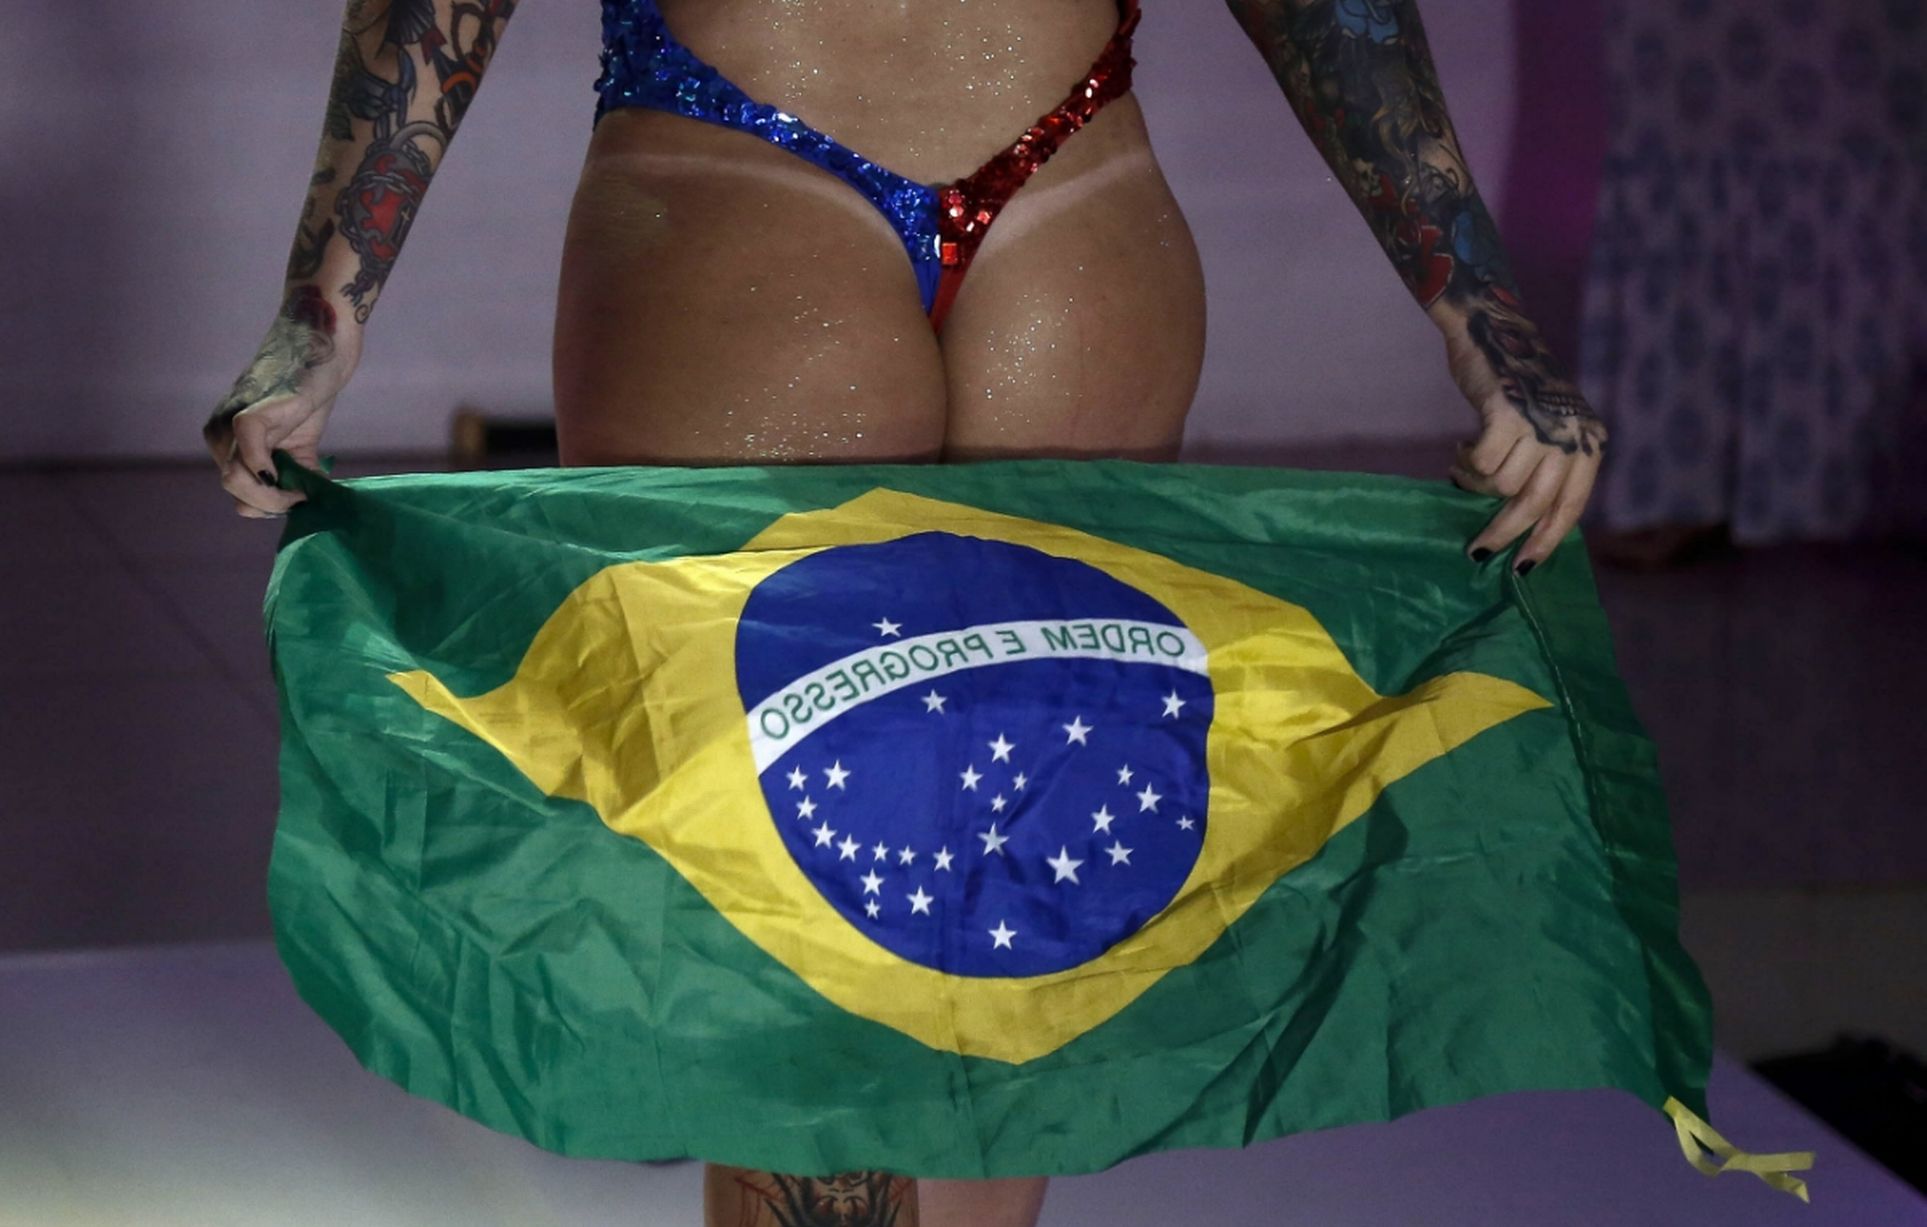 Габриелла показывает свою бразильскую попу